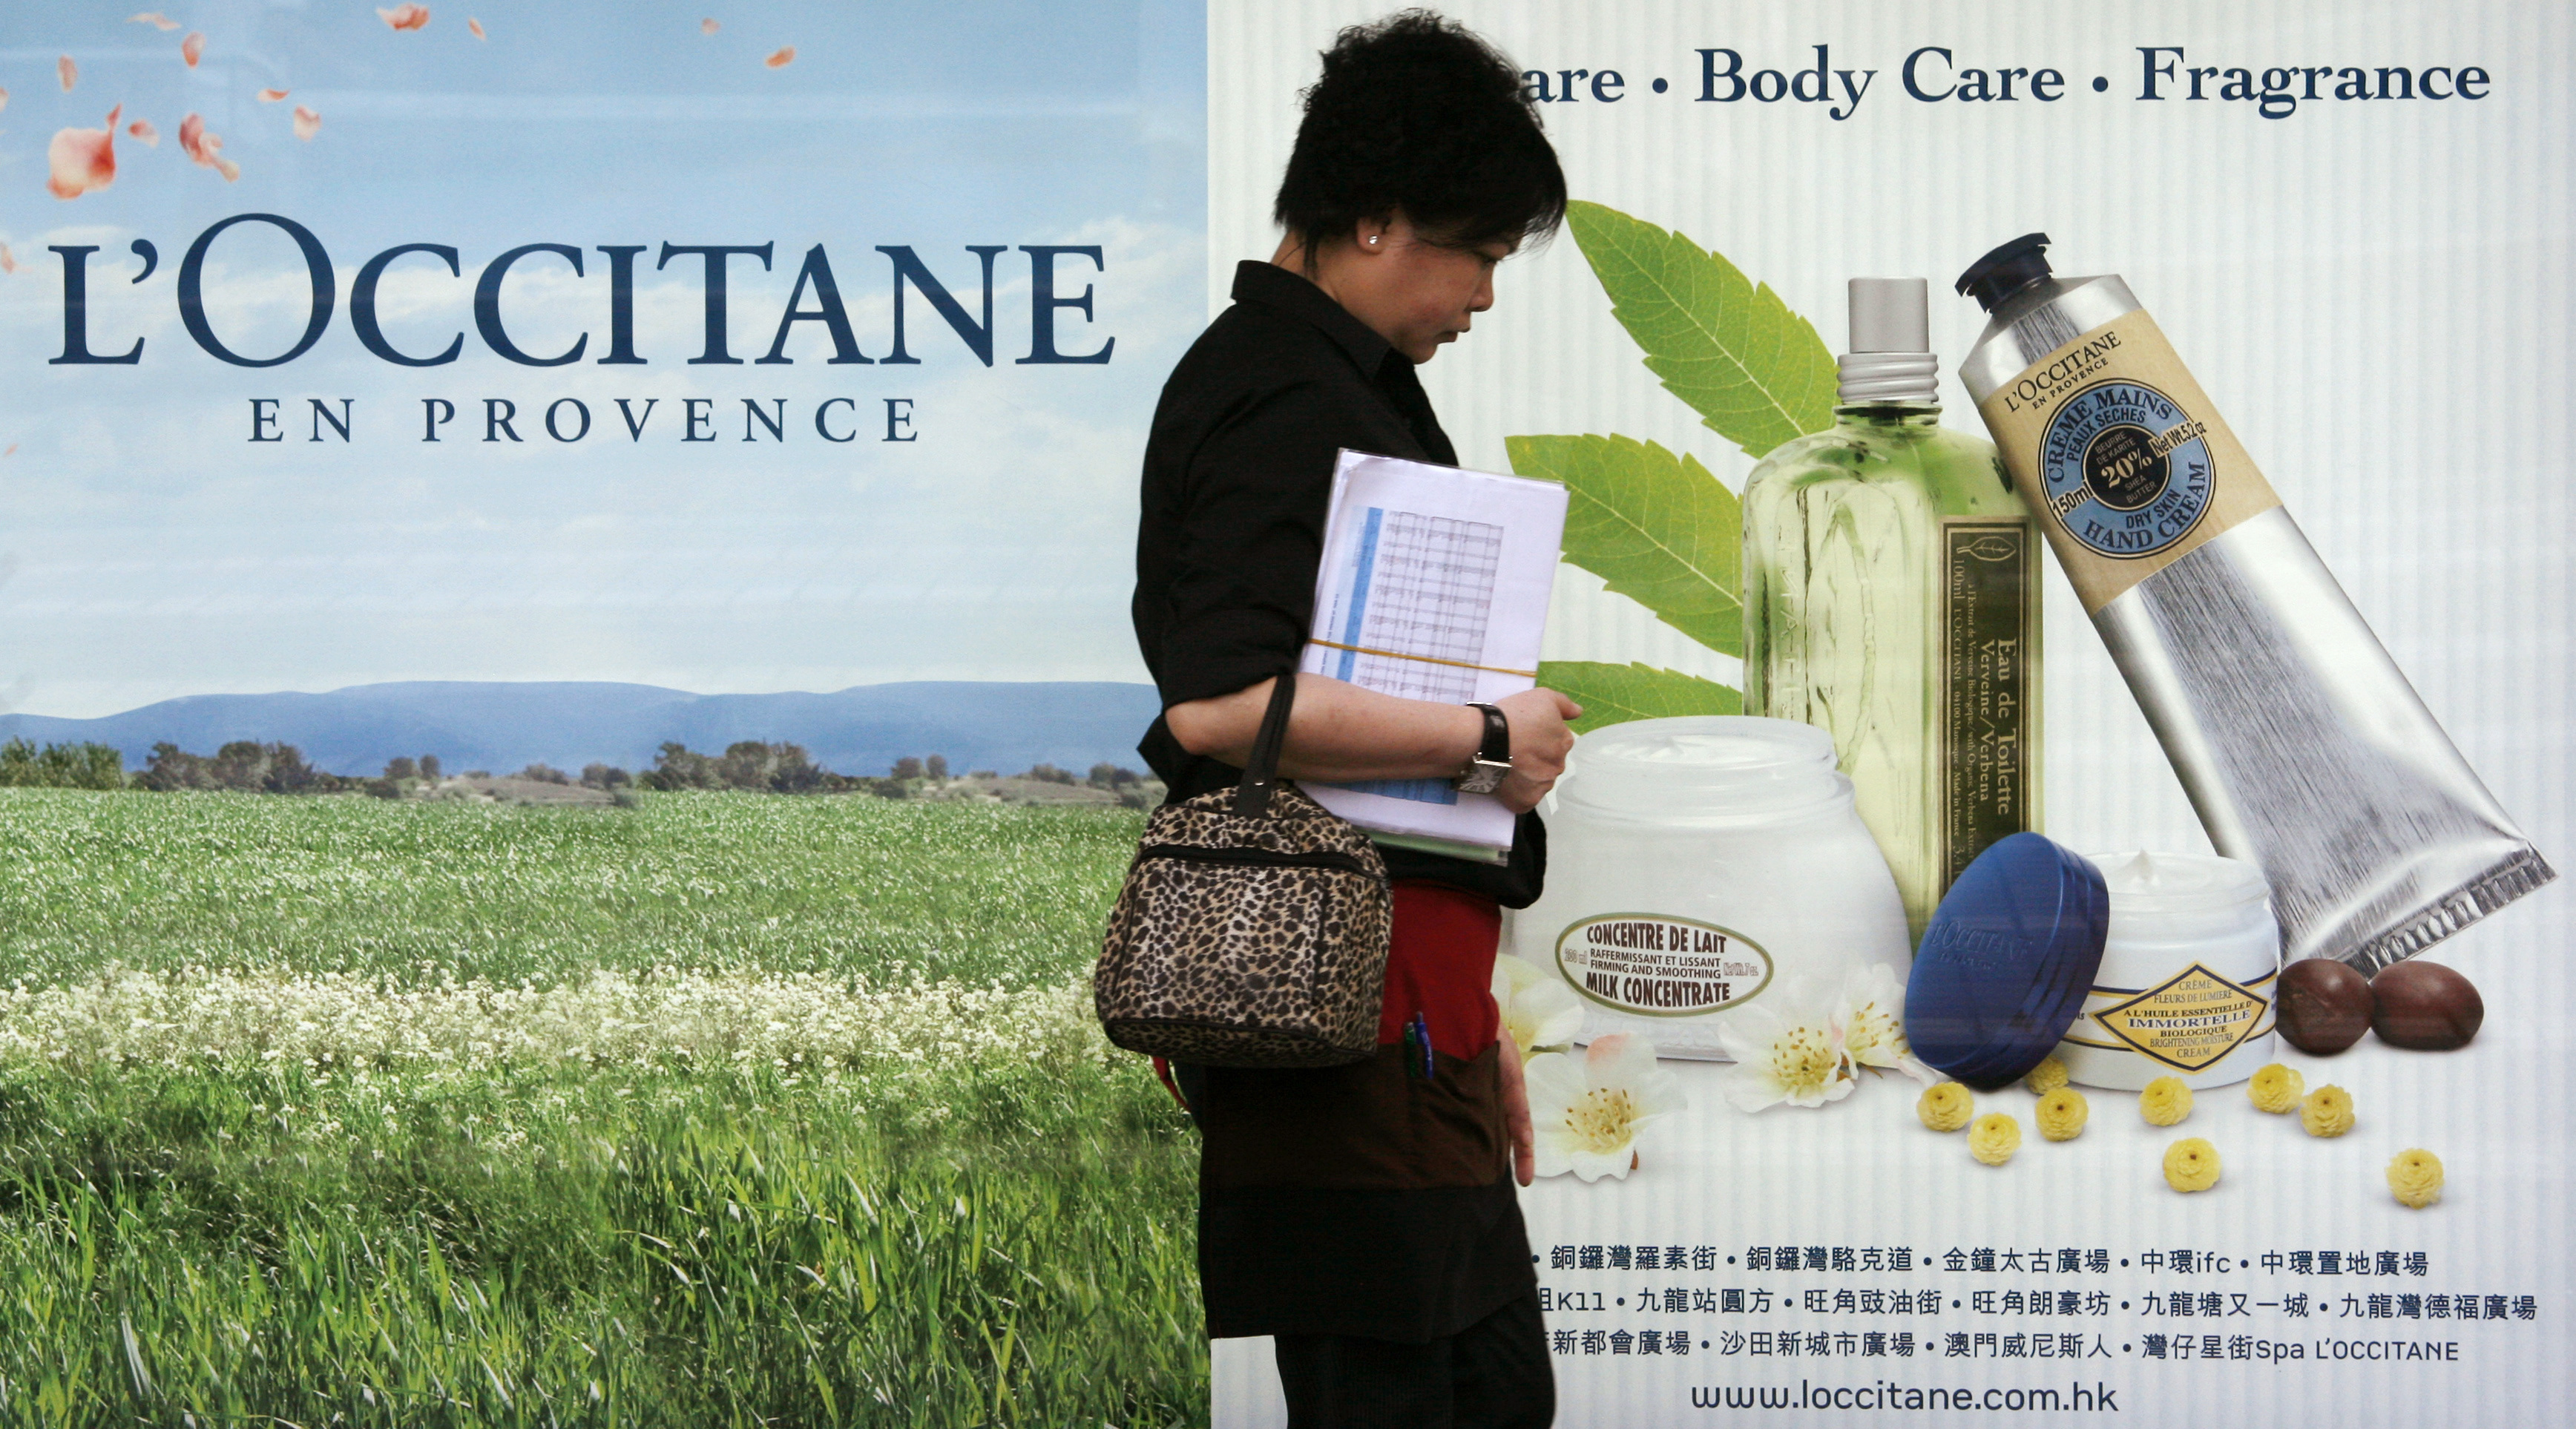 A woman walks past a L'Occitane advertisement in Hong Kong